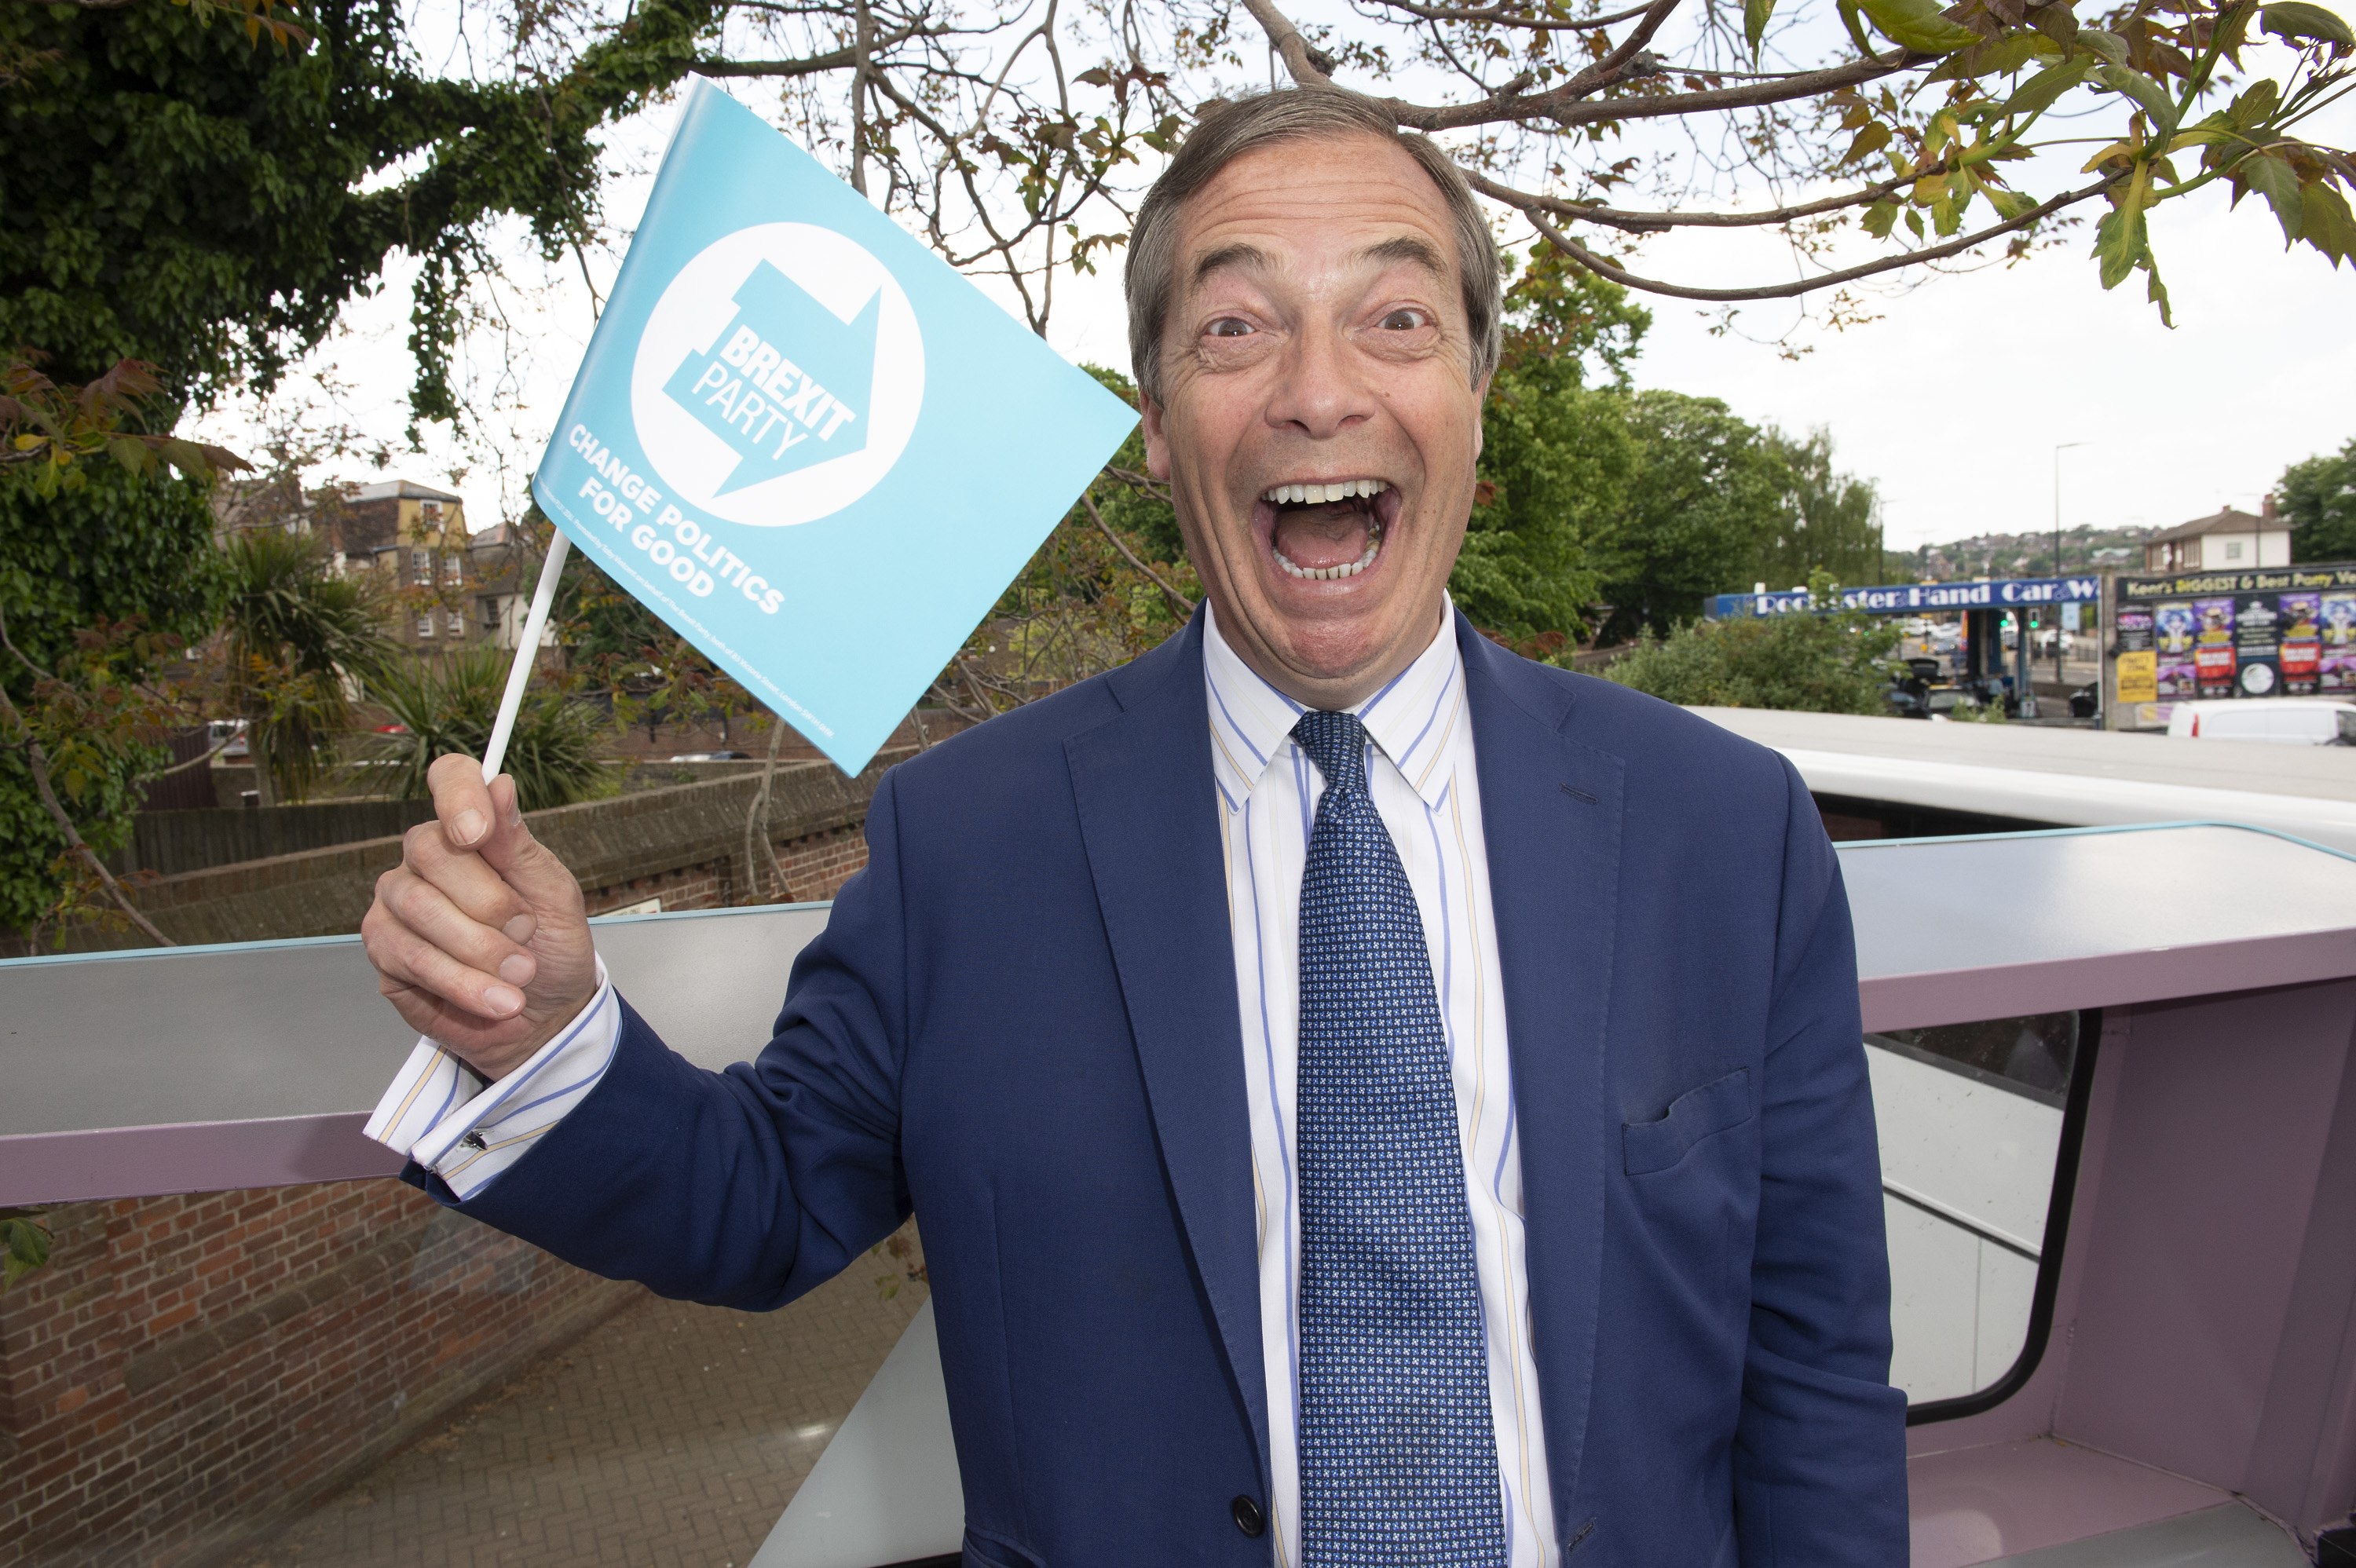 Nigel wird mit seinen politischen Ansichten mit Sicherheit für Aufregung sorgen